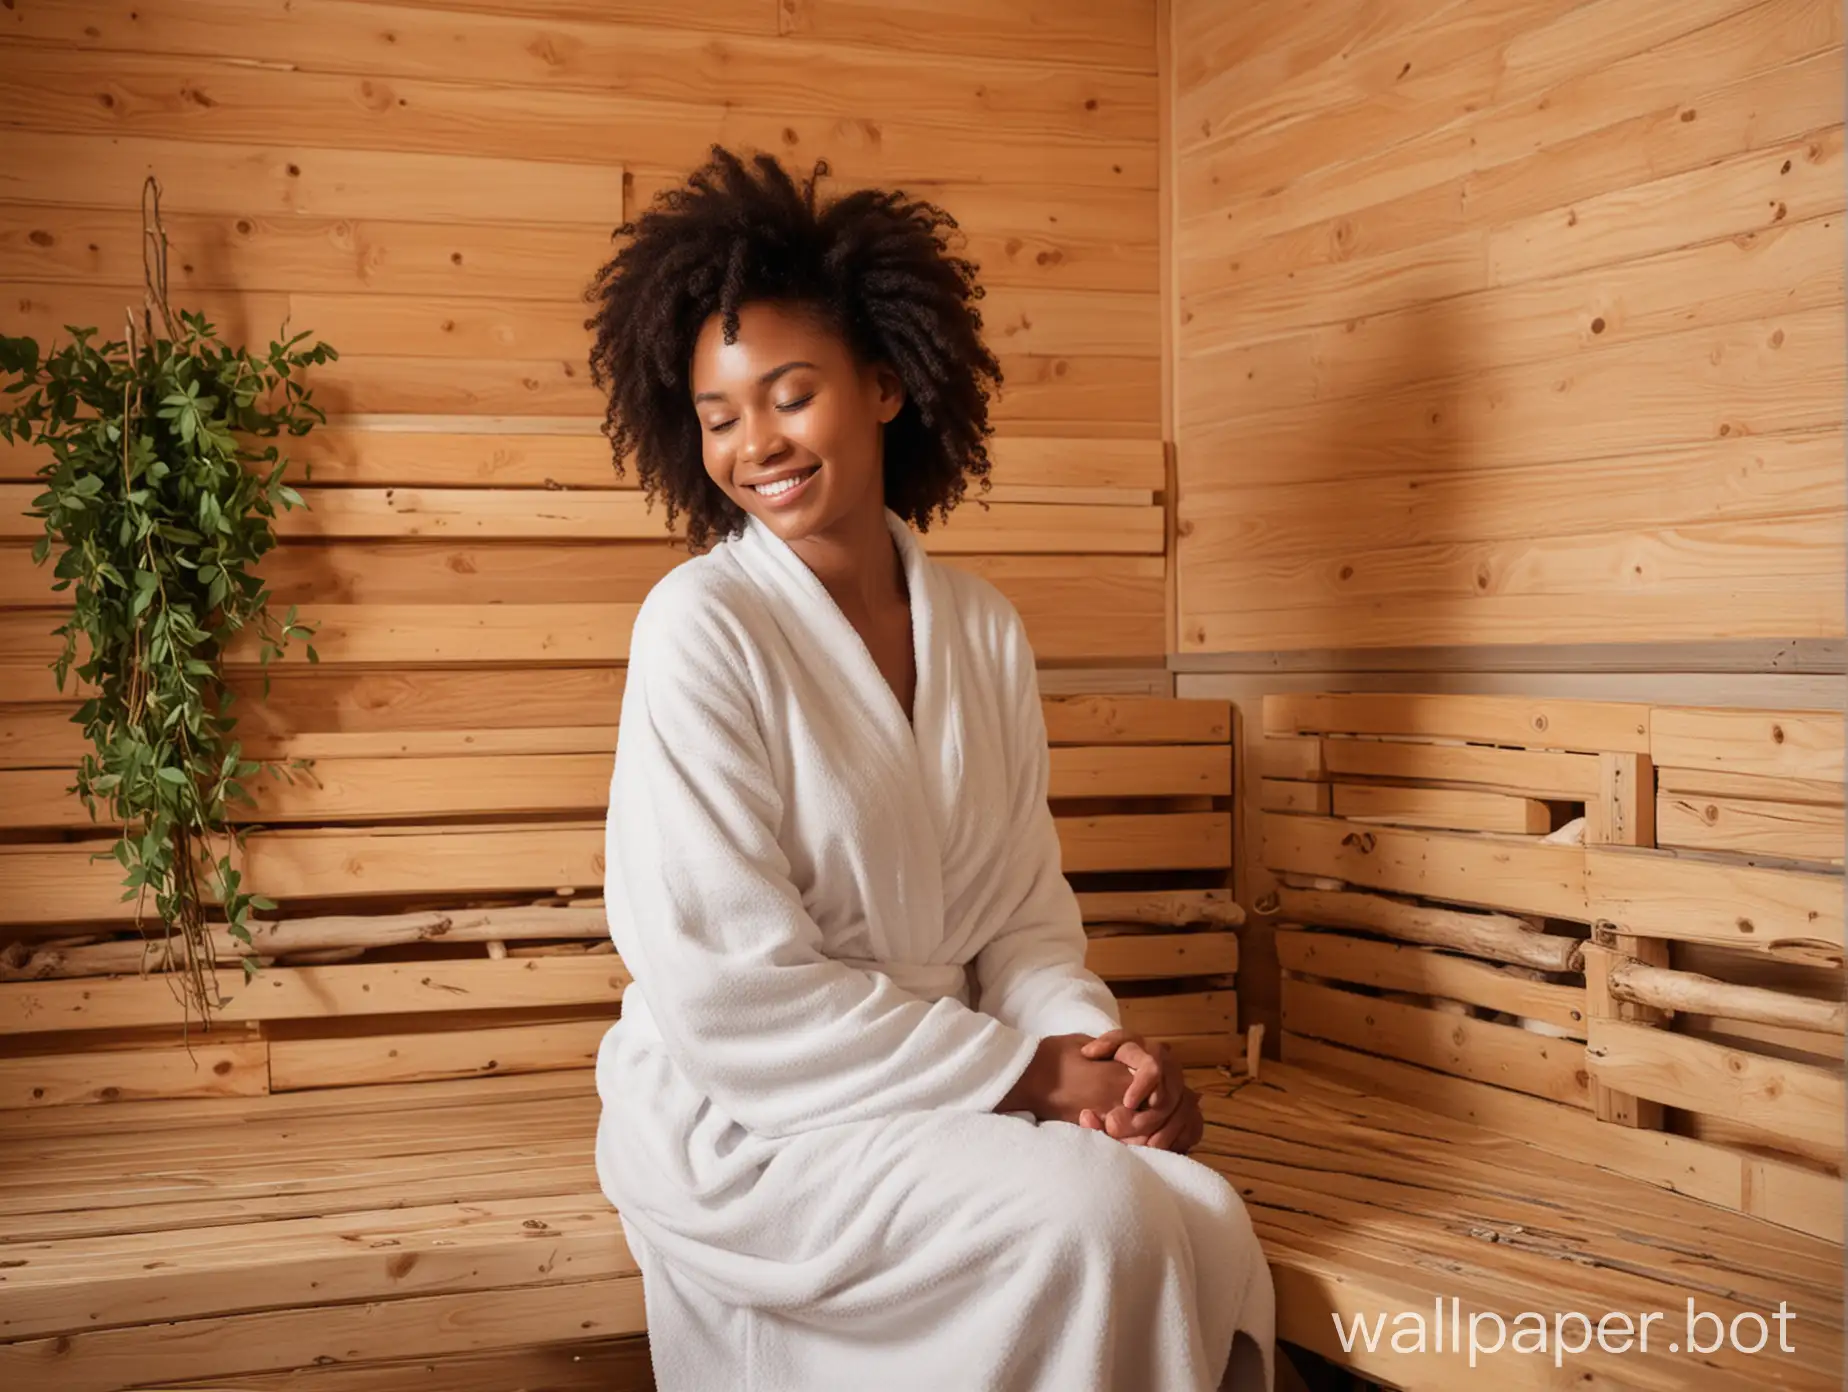 Relaxed-Black-Woman-in-Sauna-Enjoying-Birch-Twig-Treatment